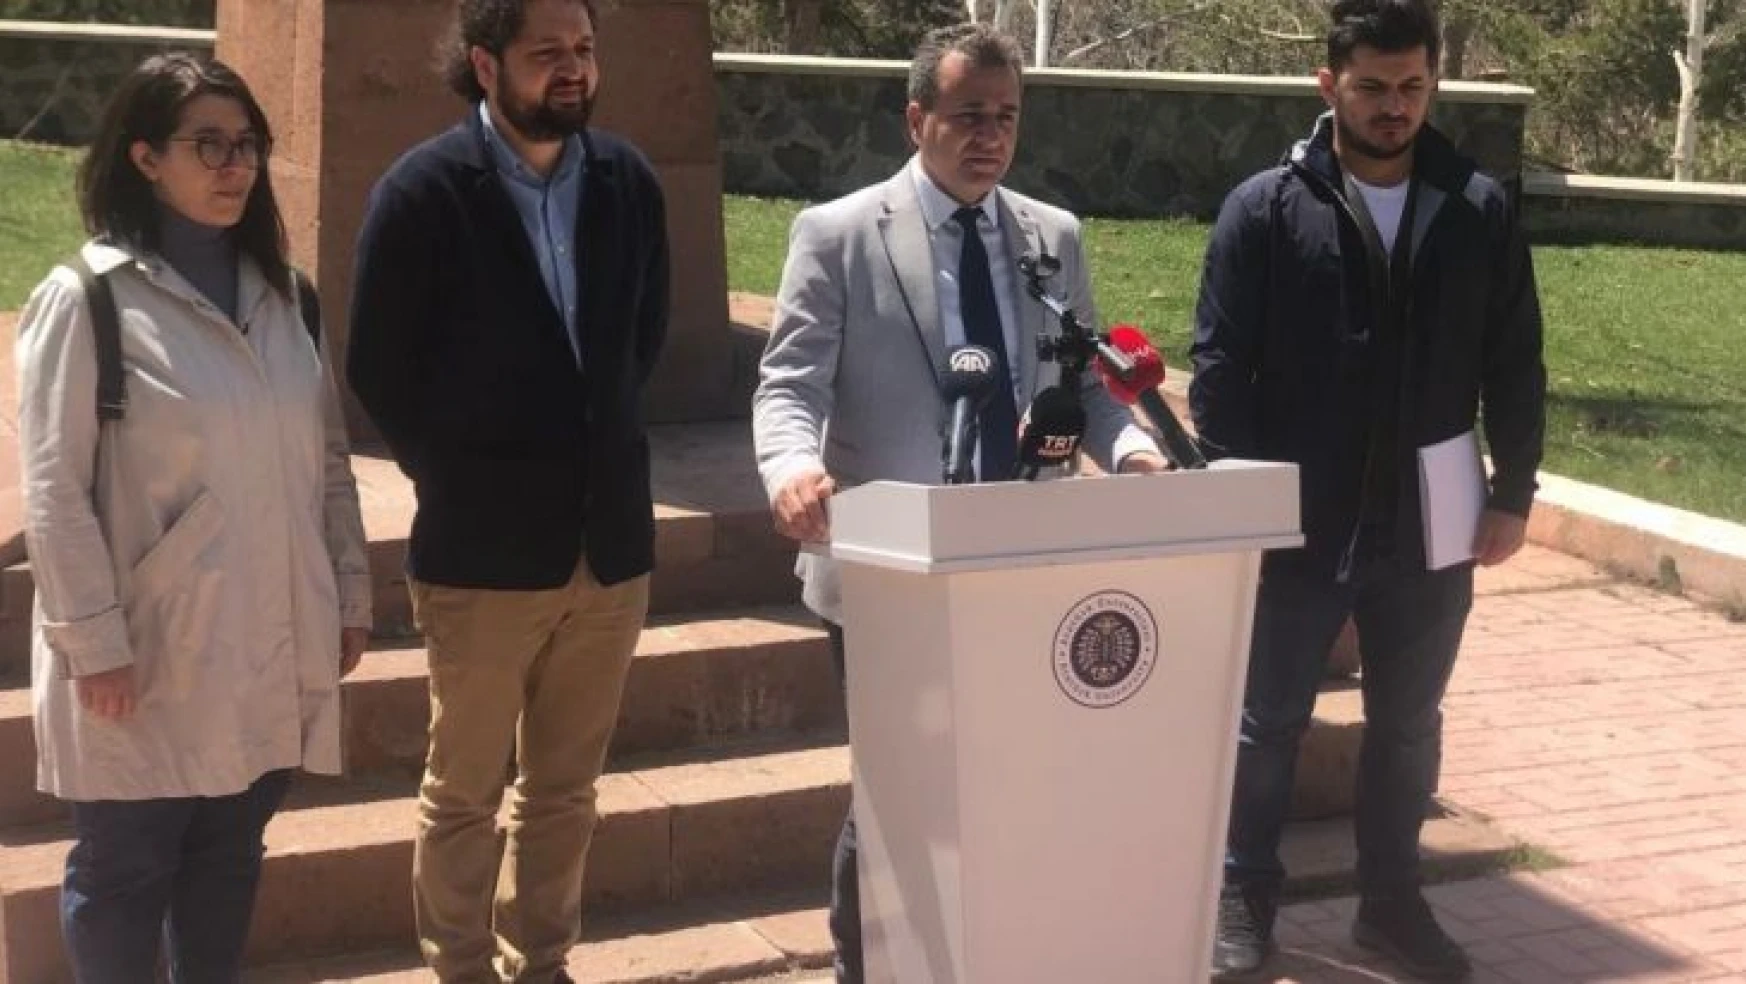 Türk-Ermeni İlişkileri Araştırma Merkezi Müdürü Doç. Dr. Mevlüt Yüksel'den ABD Başkanı Biden'e tepki